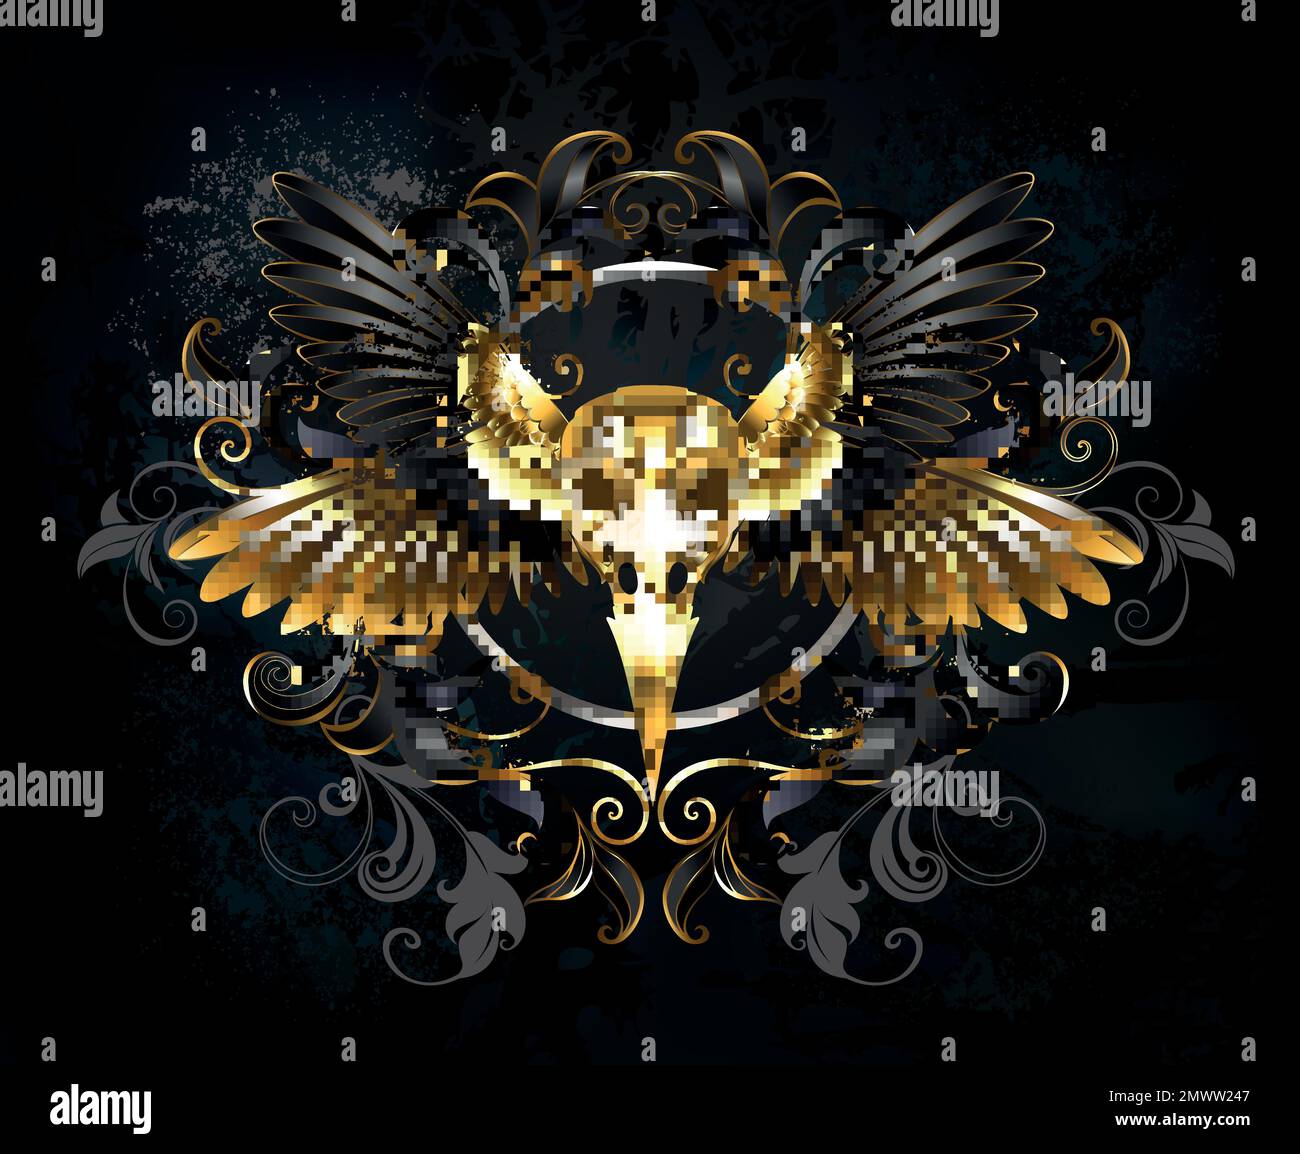 Artistiquement dessiné, symétrique, composition en noir et or, ailes d'oiseau, doré, crâne d'oiseau décoré avec motif doré sur fond sombre texturé Illustration de Vecteur